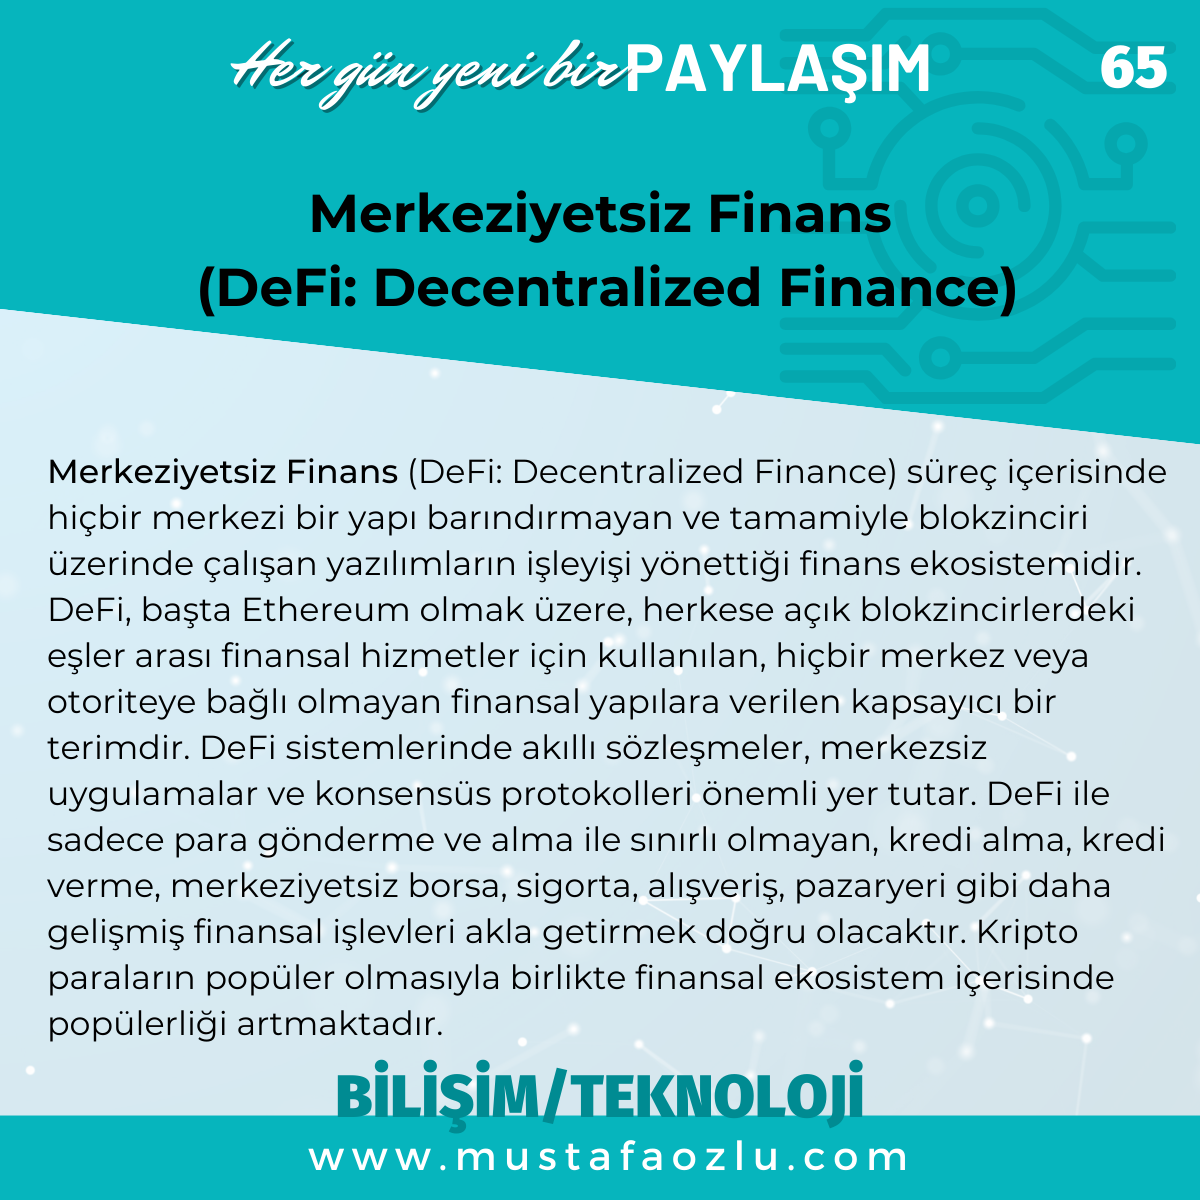 Merkeziyetsiz Finans
 (DeFi: Decentralized Finance) - Mustafa ÖZLÜ